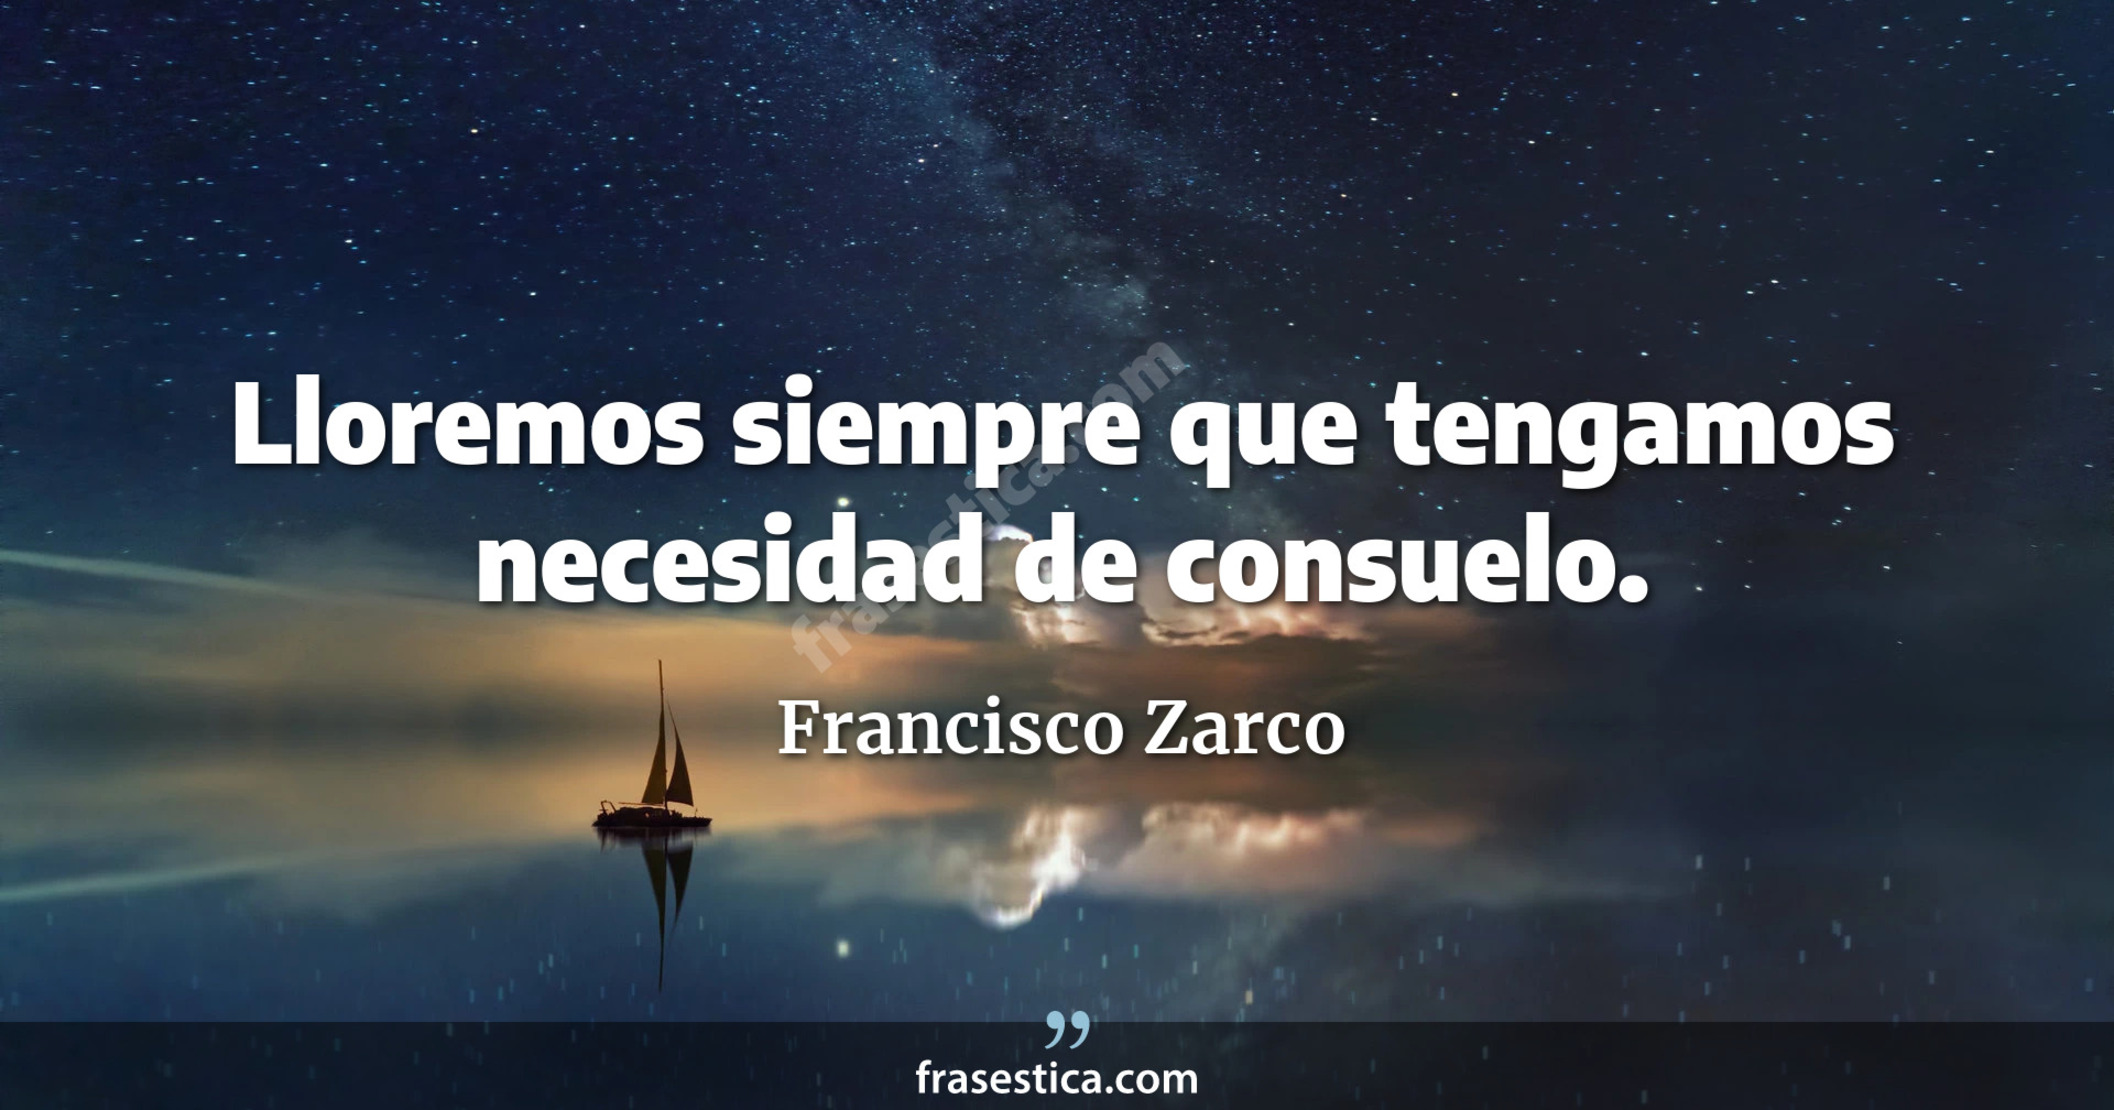 Lloremos siempre que tengamos necesidad de consuelo. - Francisco Zarco